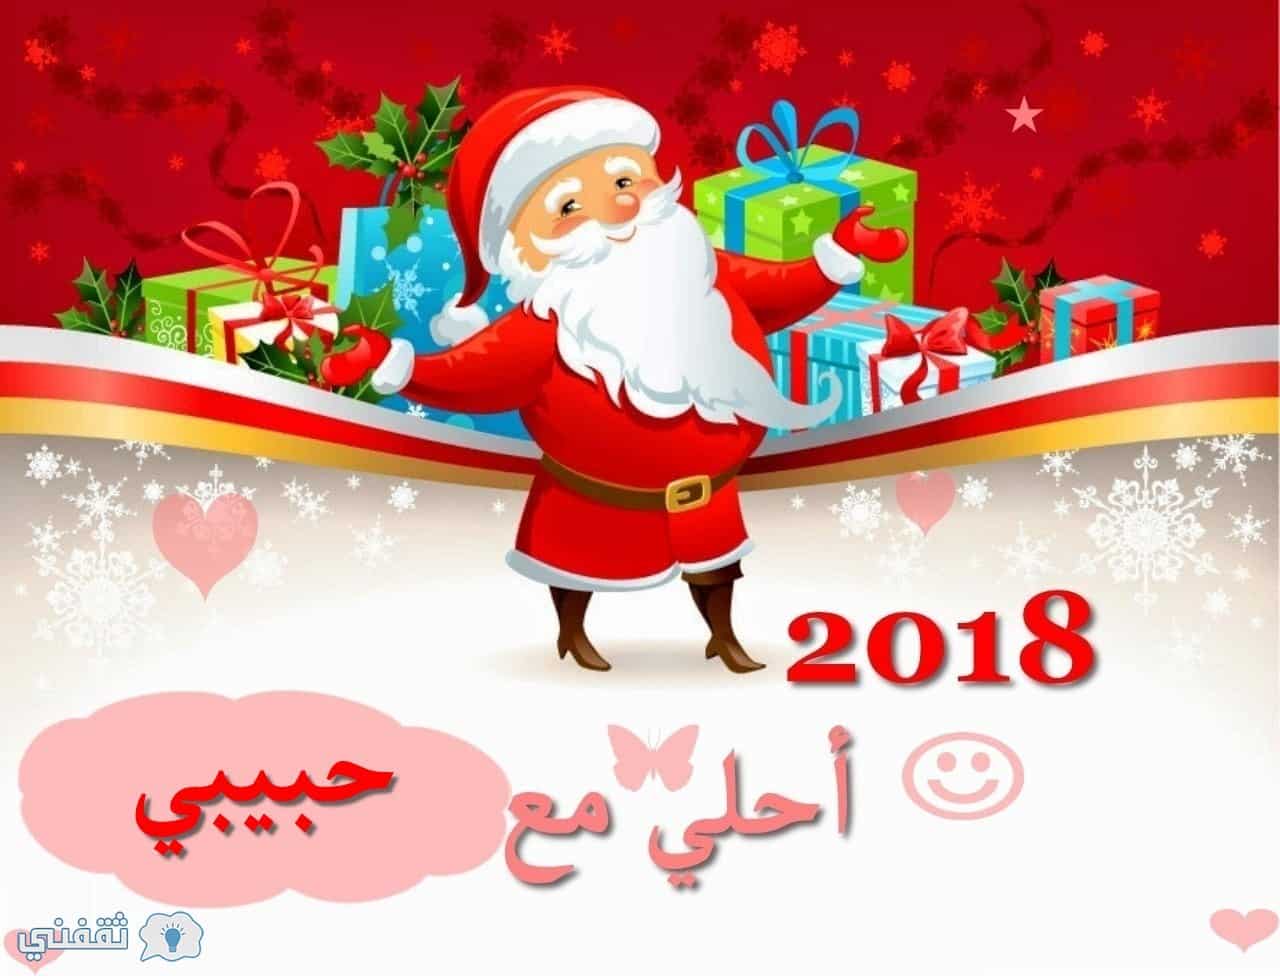 اسمك علي صورة بابا نويل 2018| اطلب اسمك وتصميمك المفضل الآن Happy New Year